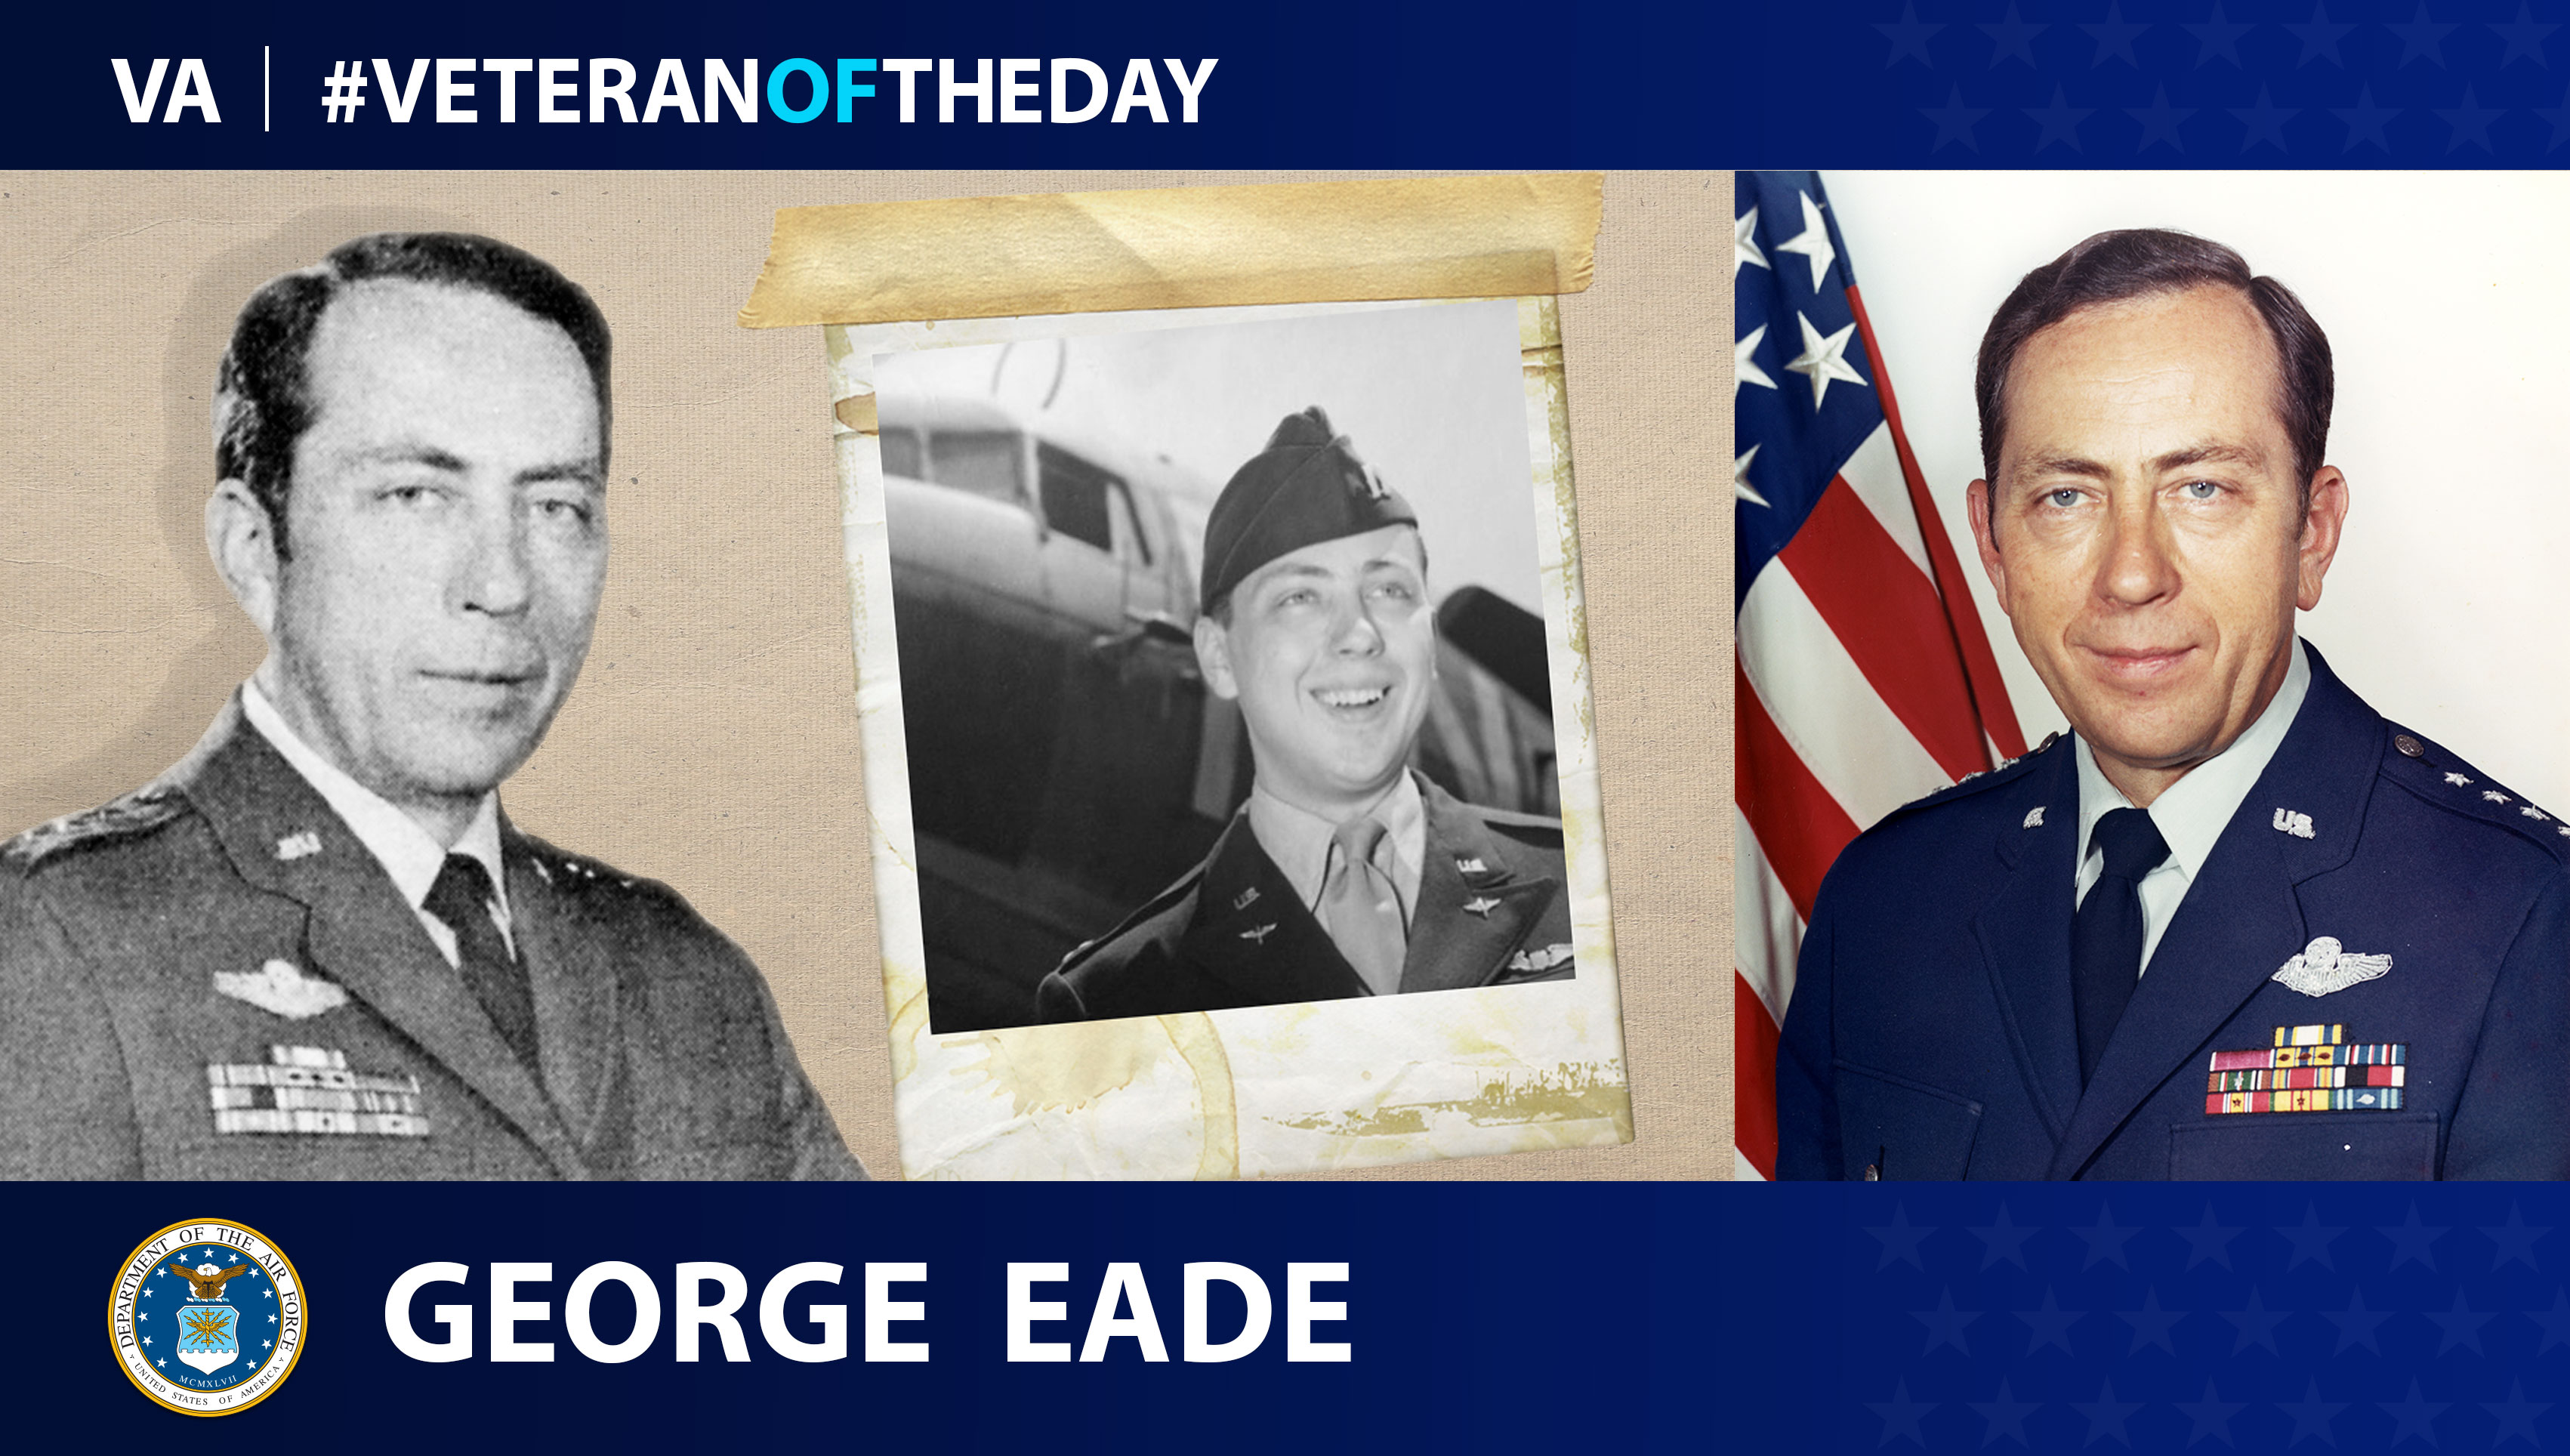 #VeteranoftheDay George Eade